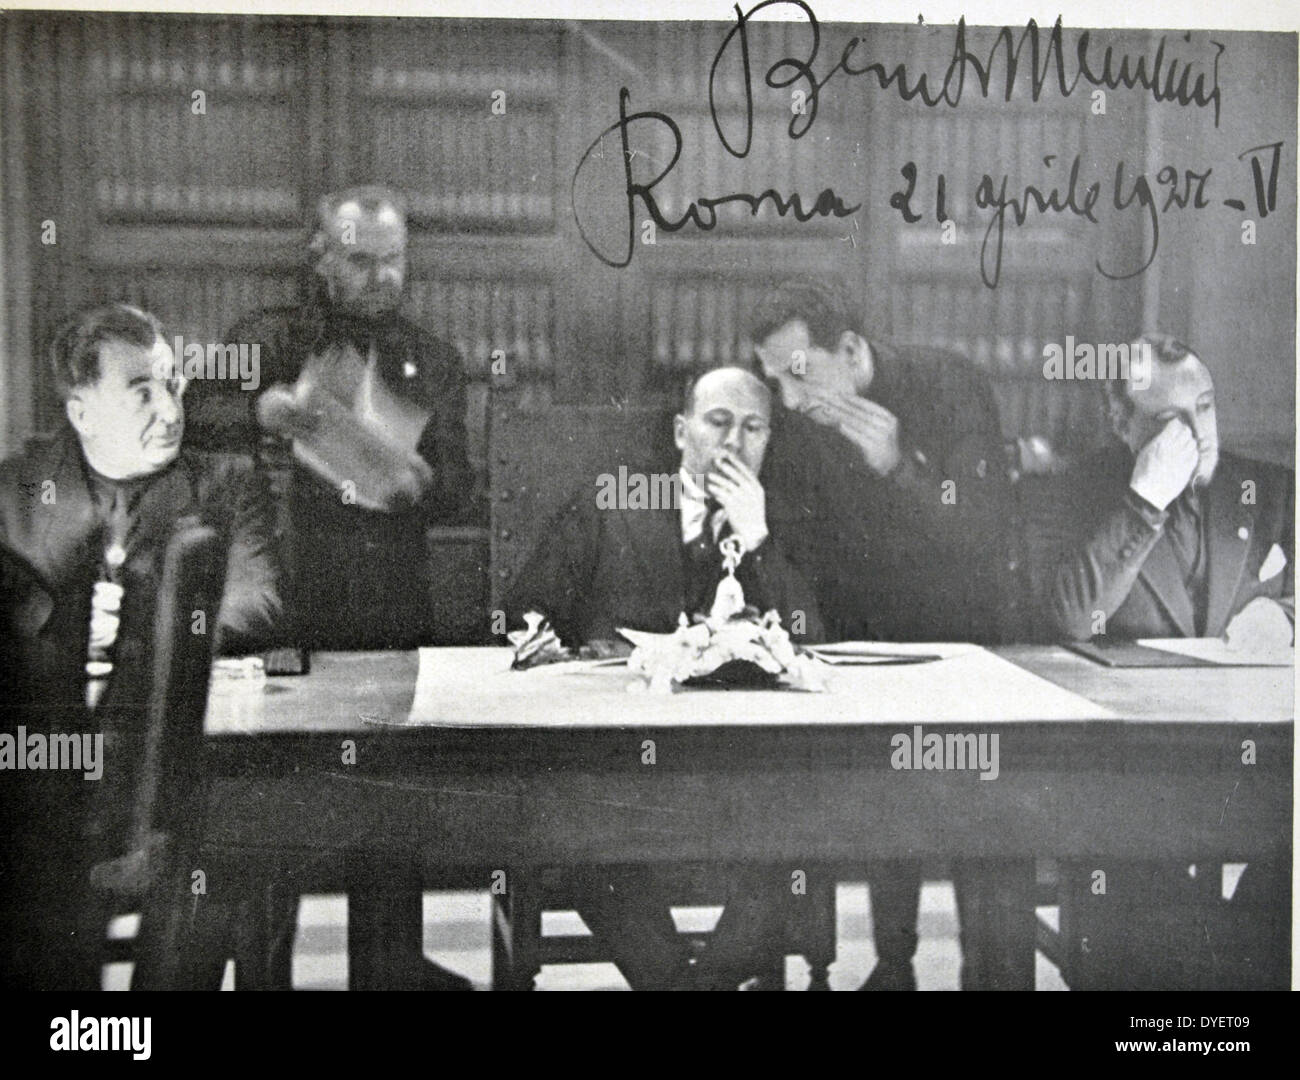 Rome, 21 April 1927 - Seduta del Gran Consiglio nella quale venne approvata  "La Carta del Lavoro". (Firma e data autografe del Stock Photo - Alamy